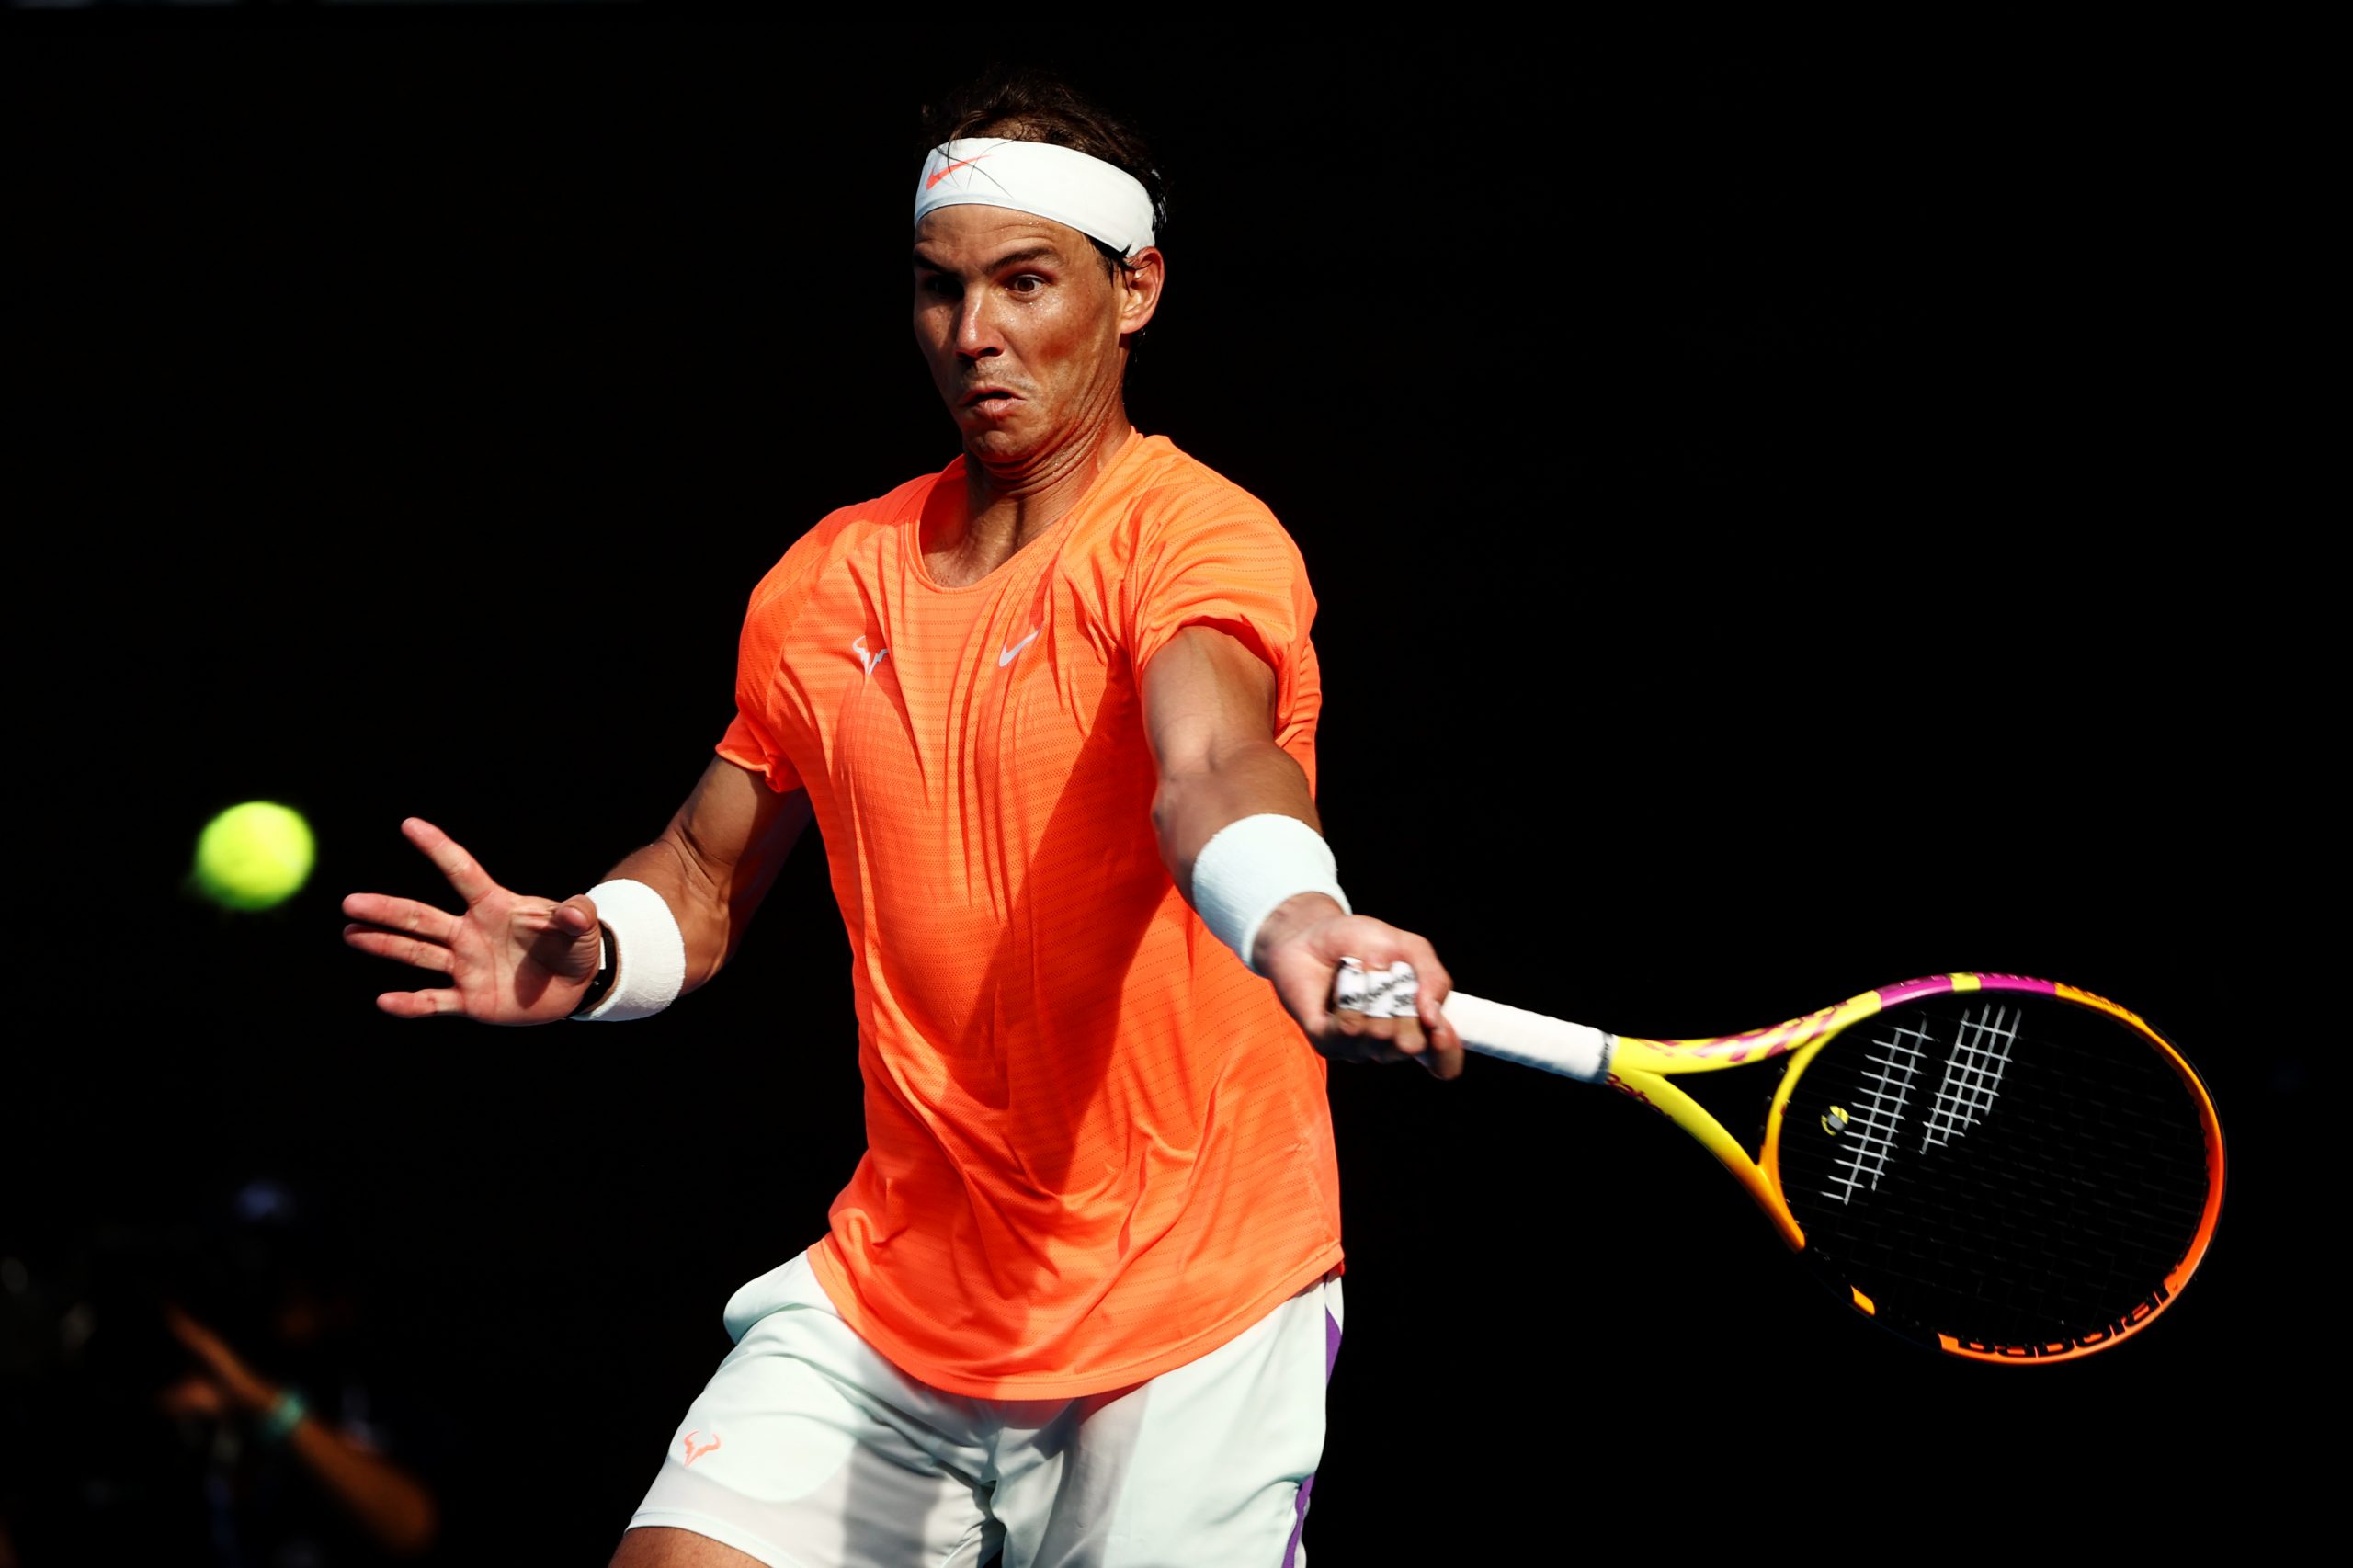 Australian Open Rublev Nadal oitavas de final